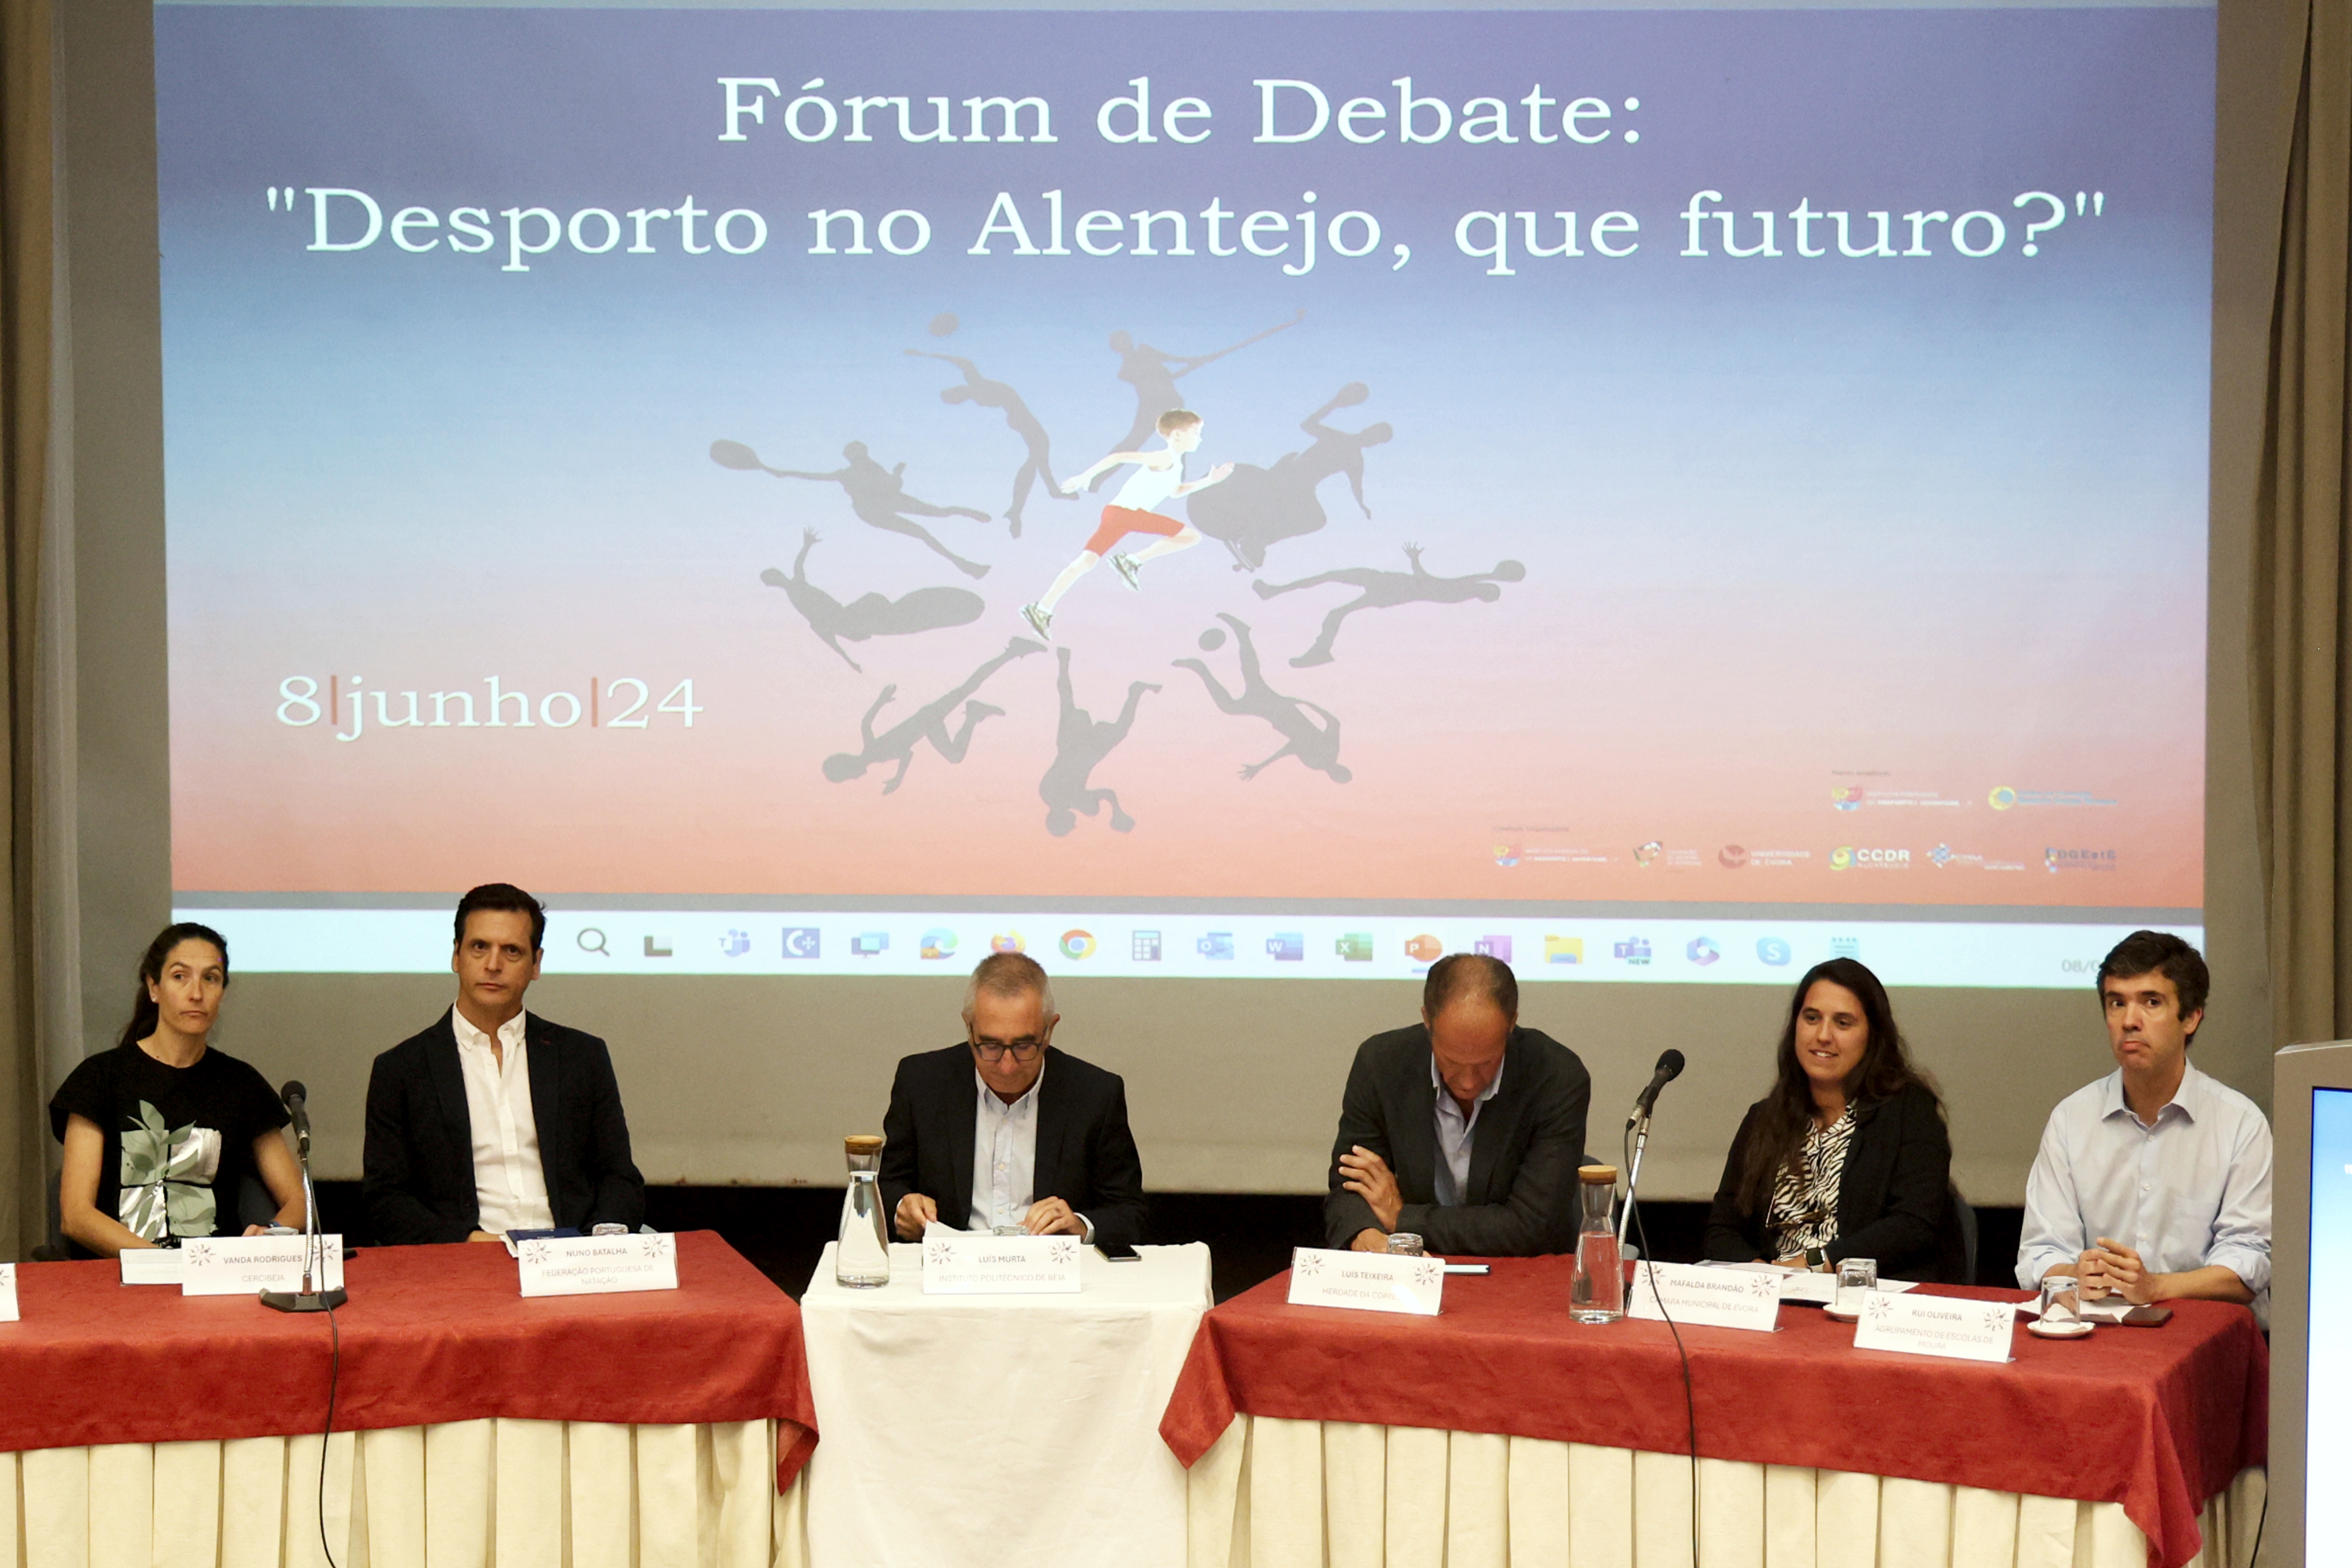 Imagem do segundo painel com os respetivos oradores, tendo como «pano de fundo» a imagem do Fórum.